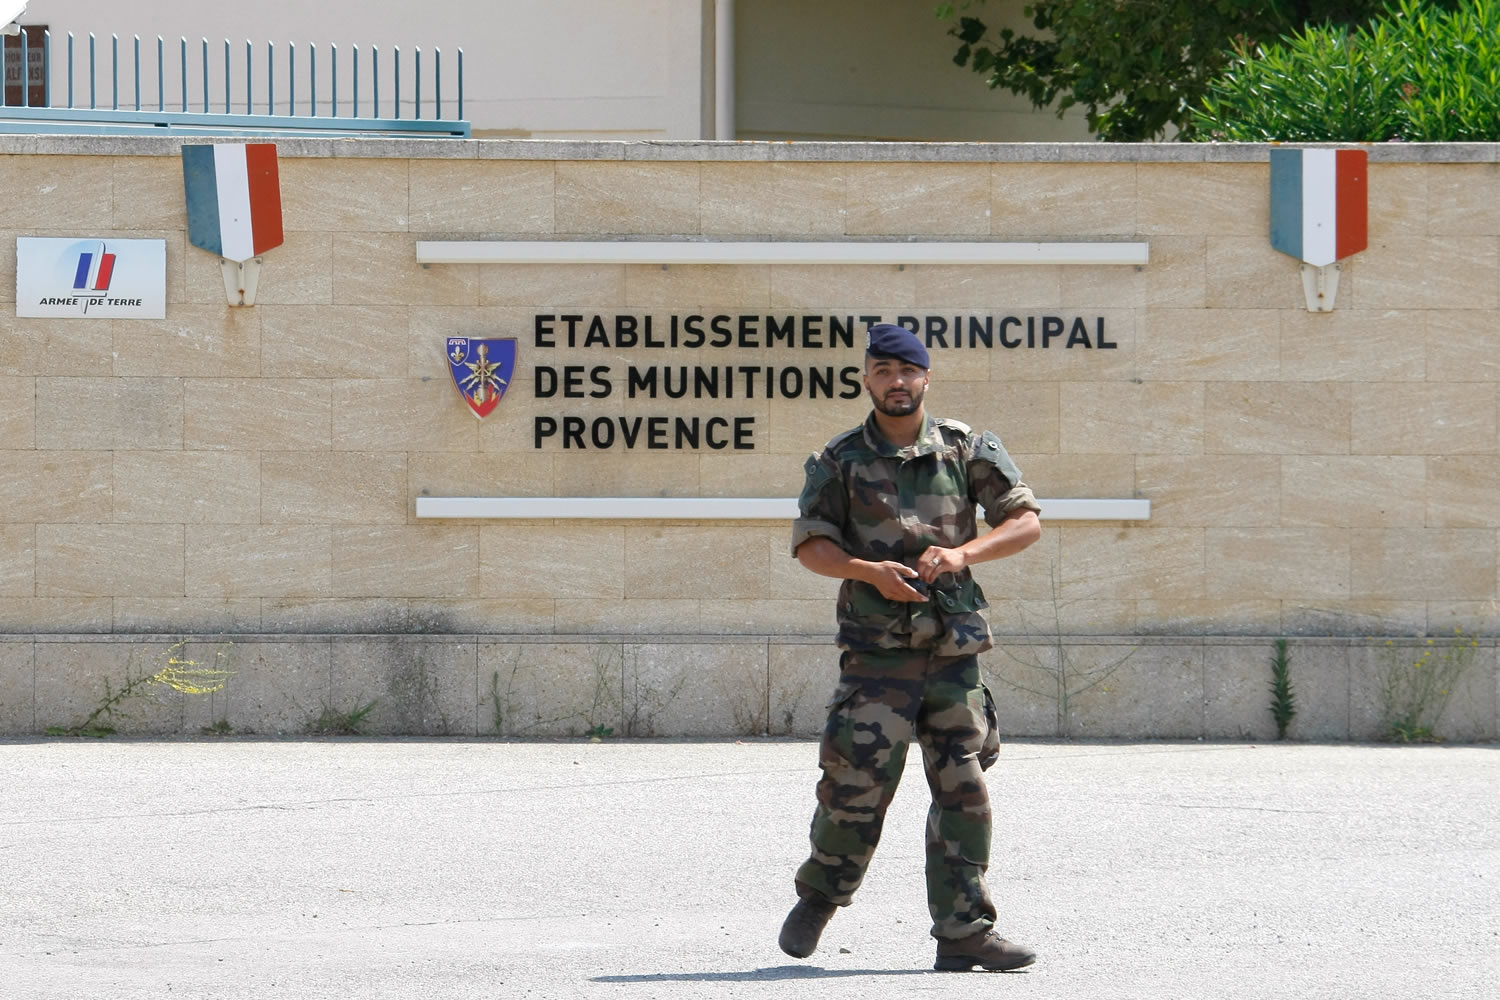 La pista del último robo de explosivos en Francia apunta a una infiltración islamista en el ejército